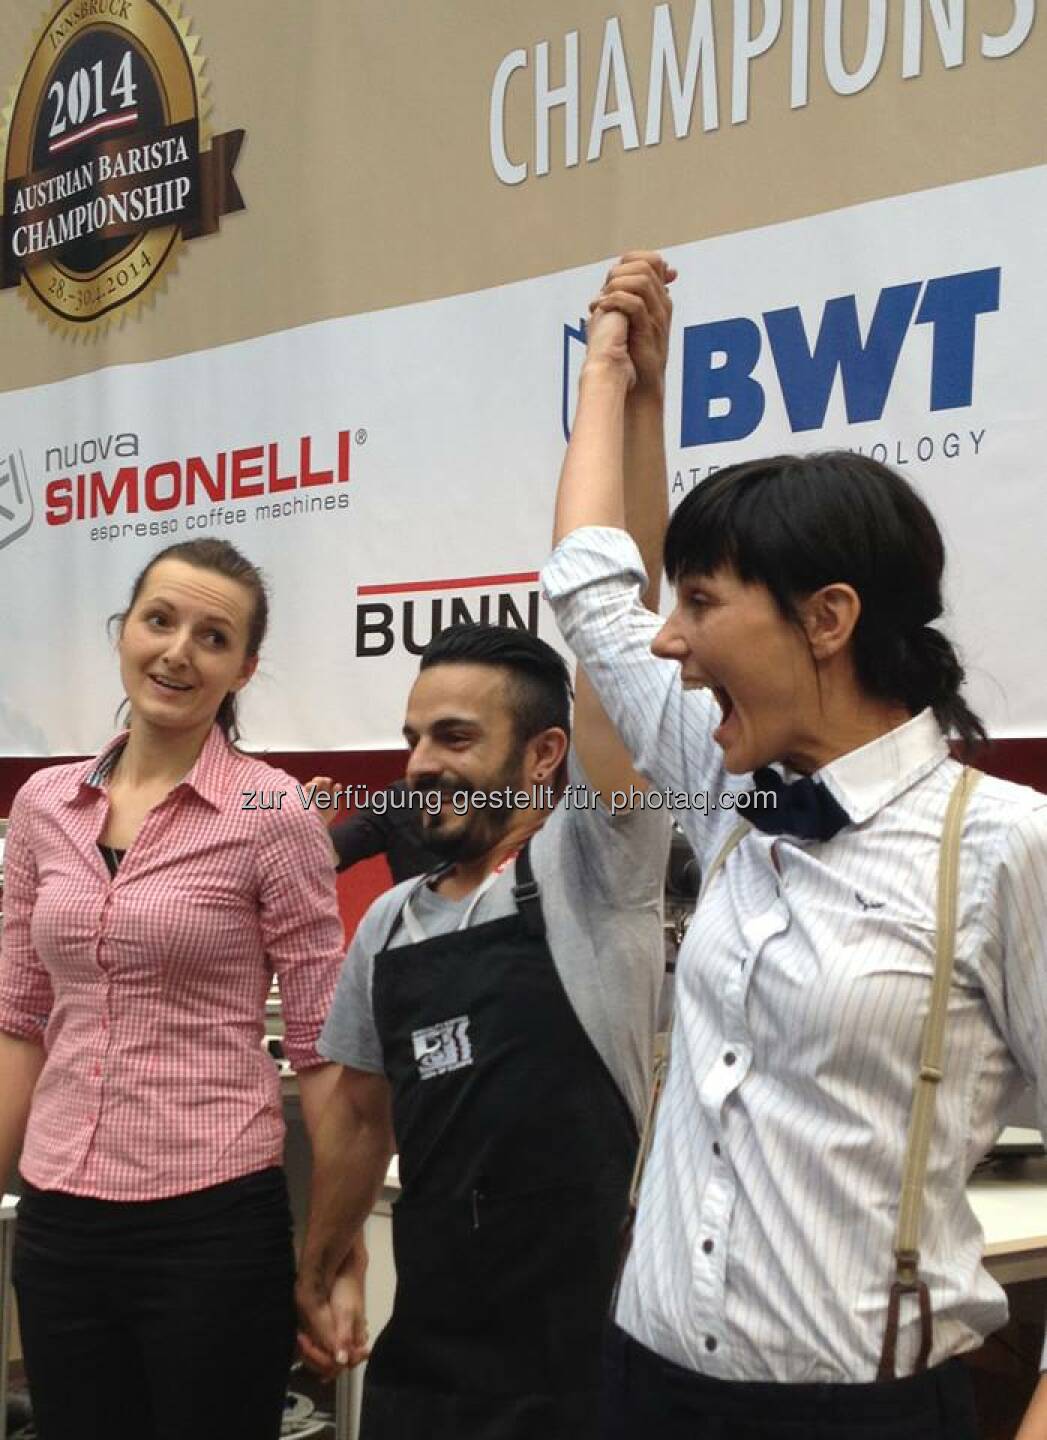 BWT: Sonja Zweidick ist die Gewinnerin der SCAE Austria Baristameisterschaften 2014. Wir freuen uns darauf, sie zu den Weltmeisterschaften nach Rimini und Melbourne zu begleiten und wünschen viel Erfolg  Source: http://facebook.com/bwtwasser